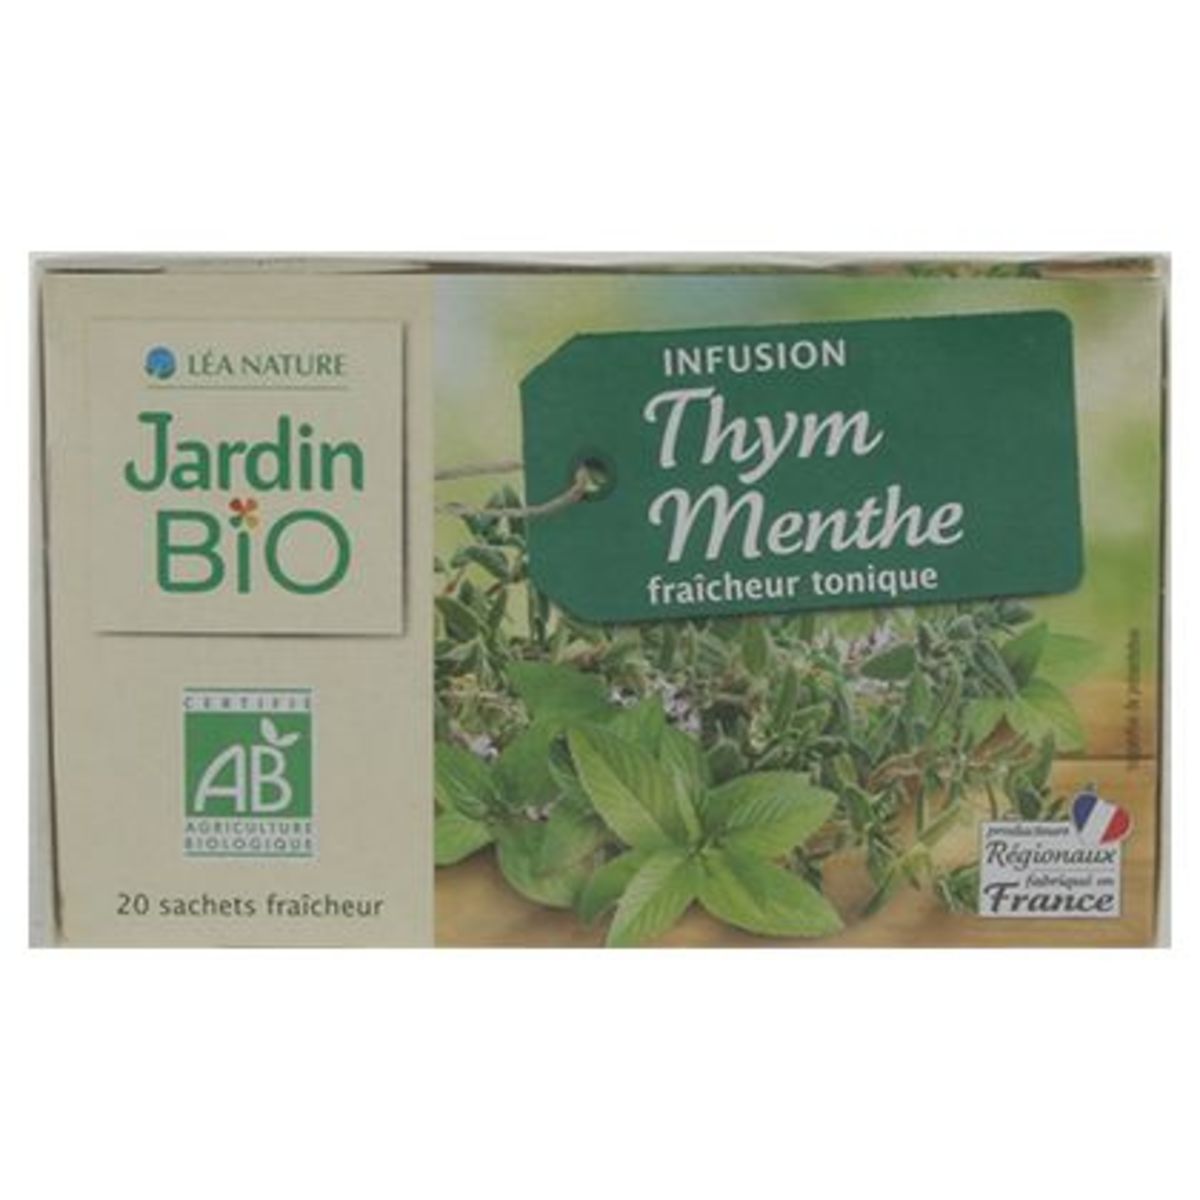 Jardin BiO ētic Infusion Thym Menthe Fraîcheur Tonique 30 g